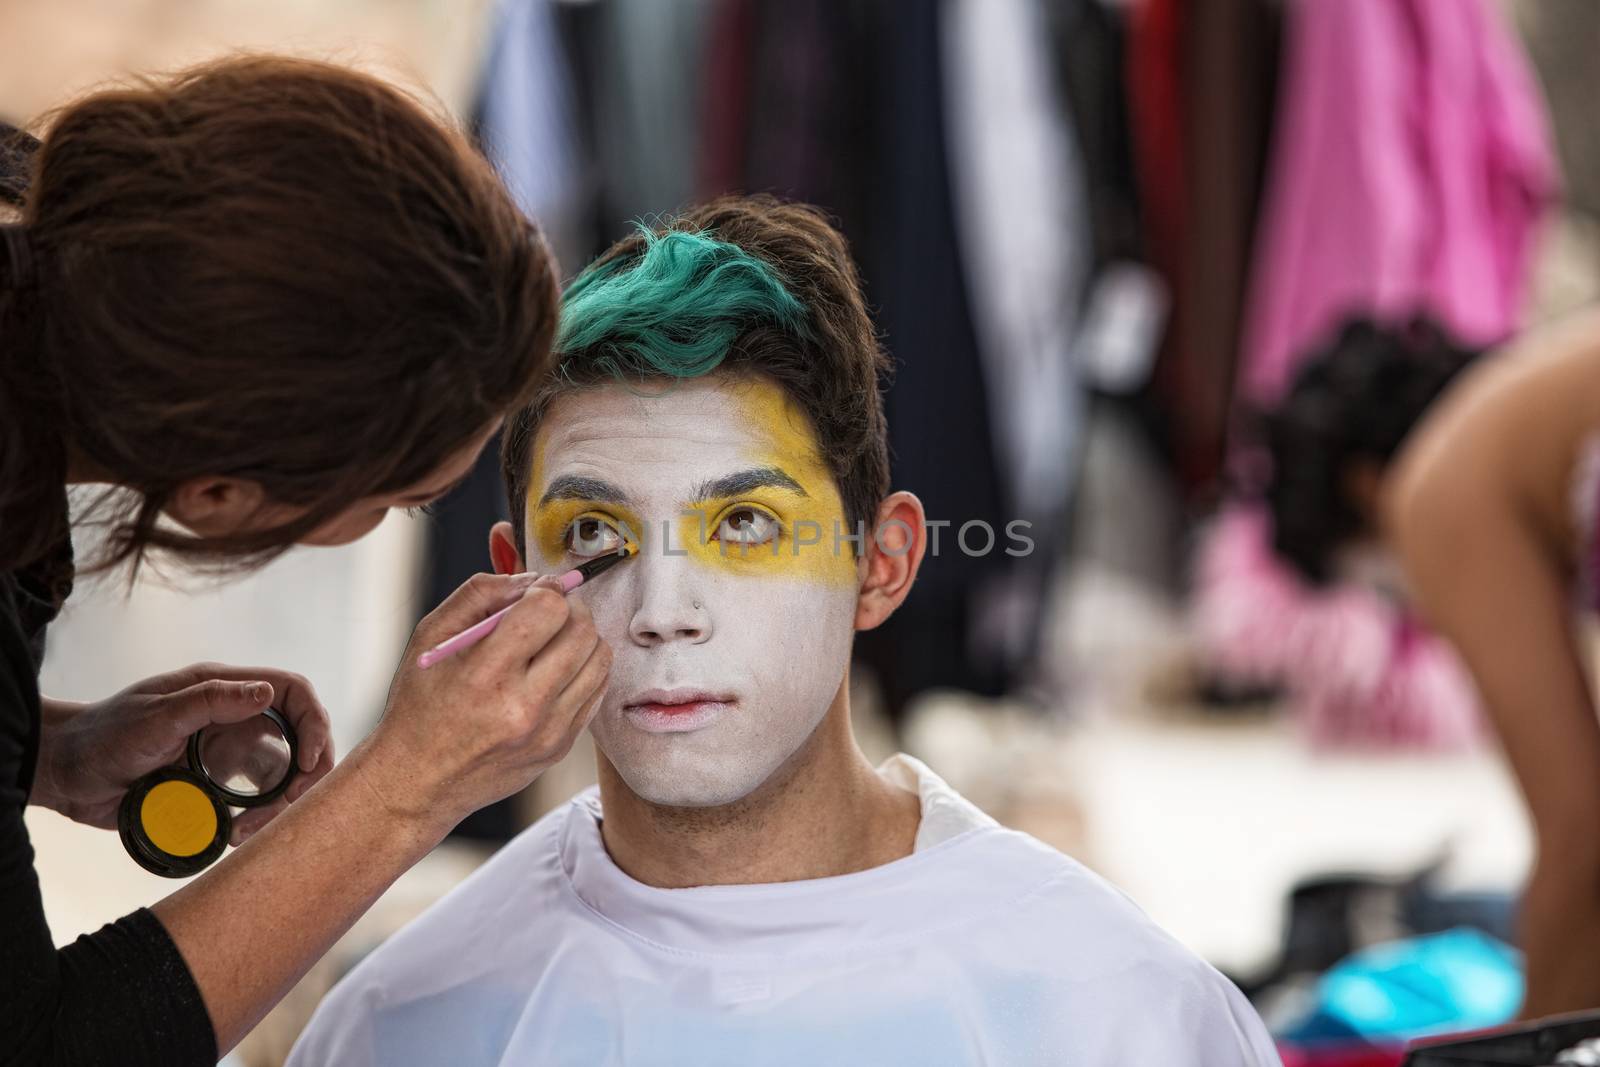 Makeup Artist Paining Clown Face by Creatista